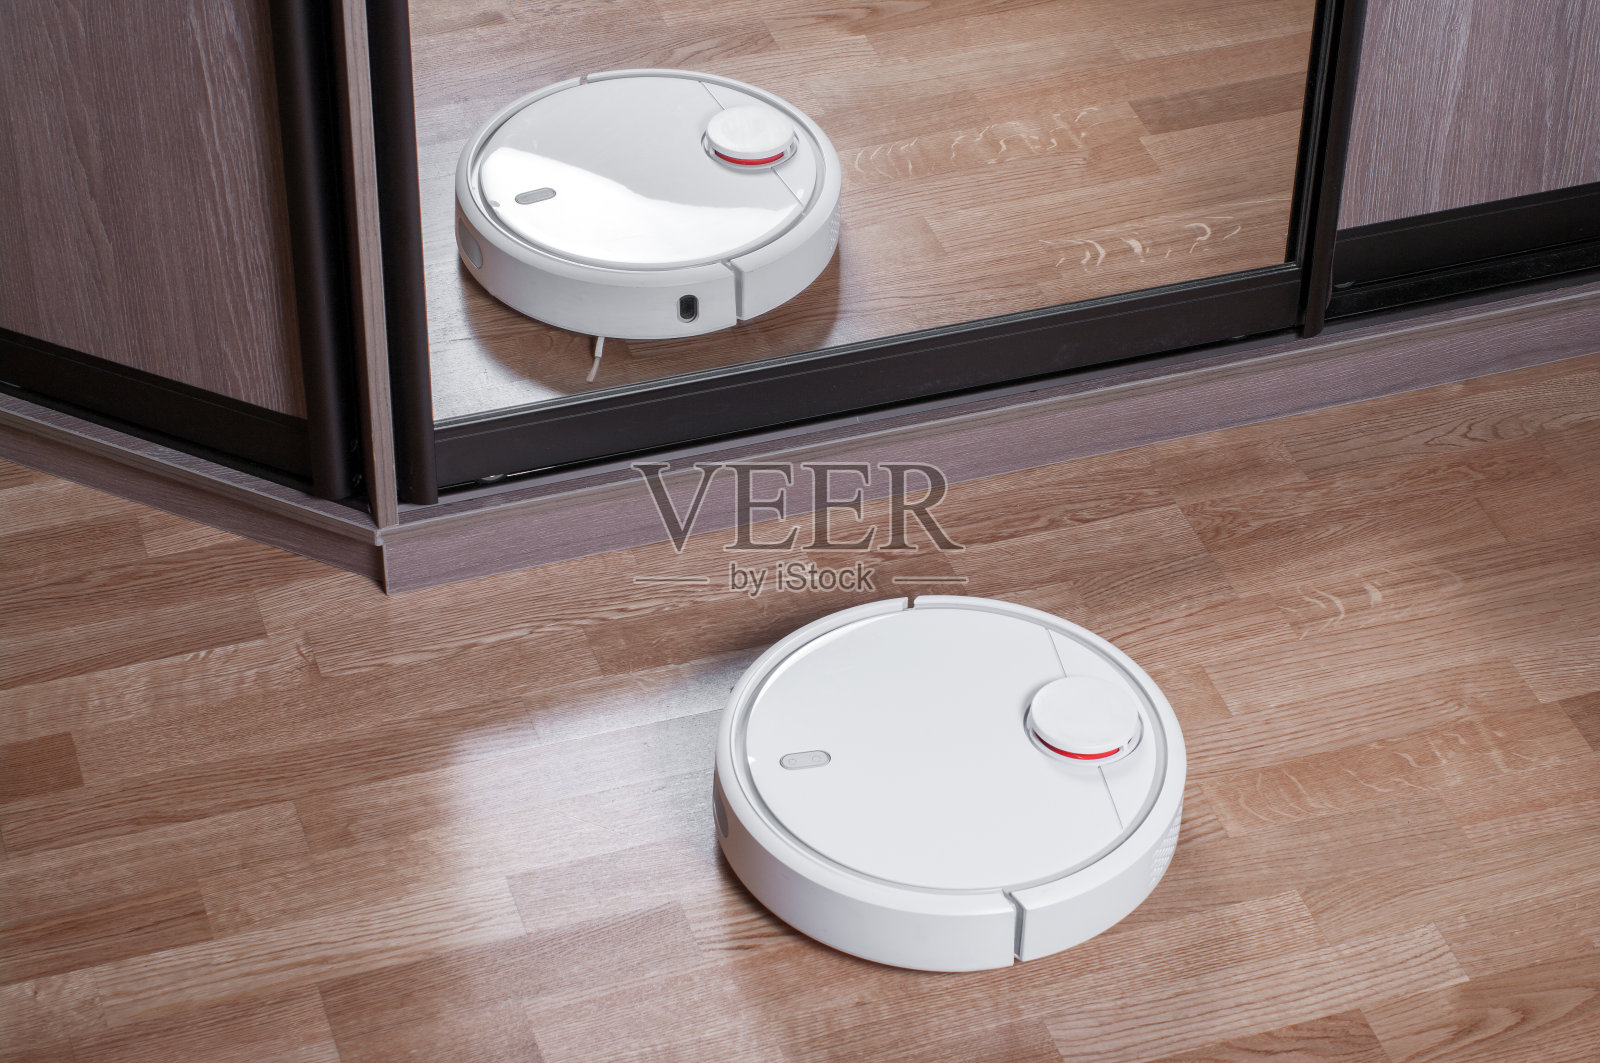 强化地板上的吸尘器机器人是衣柜里的镜子，智能家居机器人无线清洁简化了日常家务，有效的吸尘在没有住户照片摄影图片